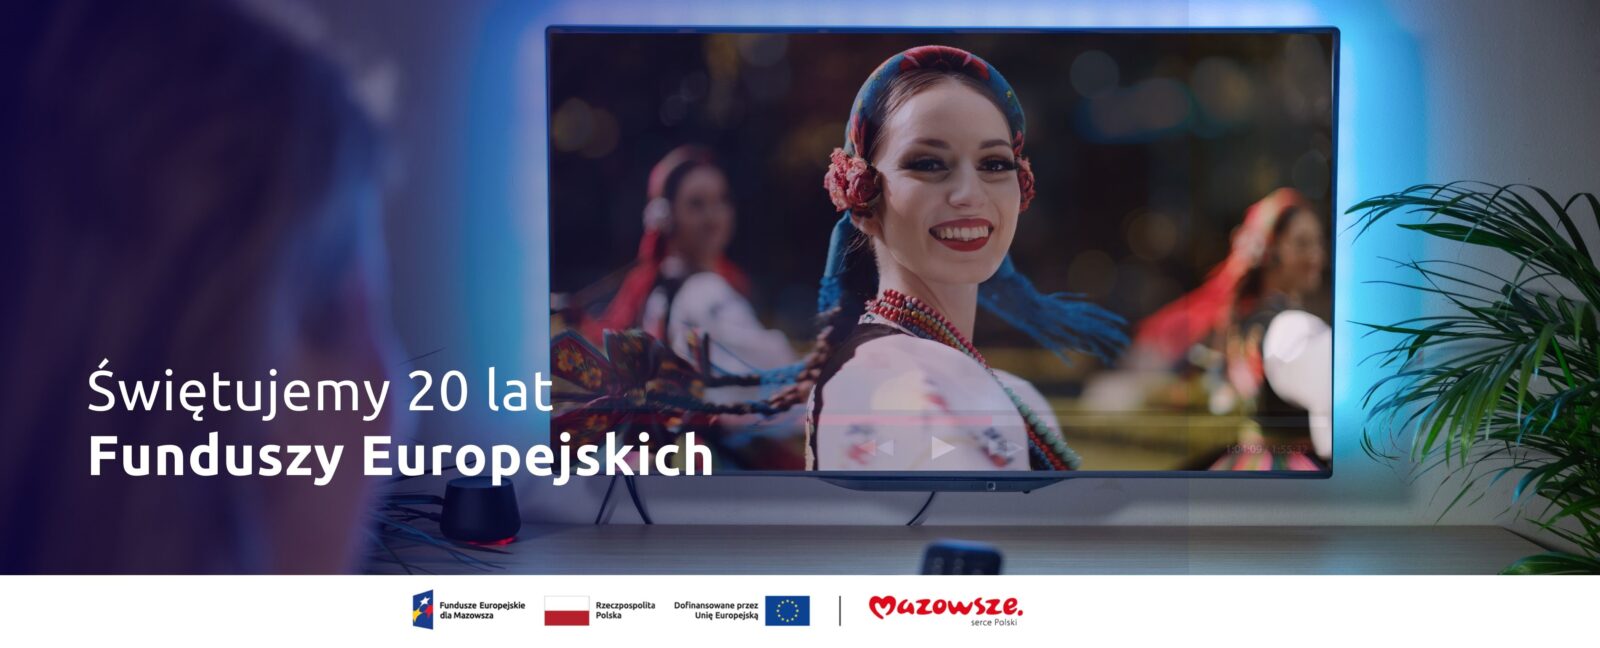 Grafika przedstawia telewizor z obrazem kobiet w tradycyjnych strojach Mazowsza. Po lewej stronie napis "Świętujemy 20 lat Funduszy Europejskich"